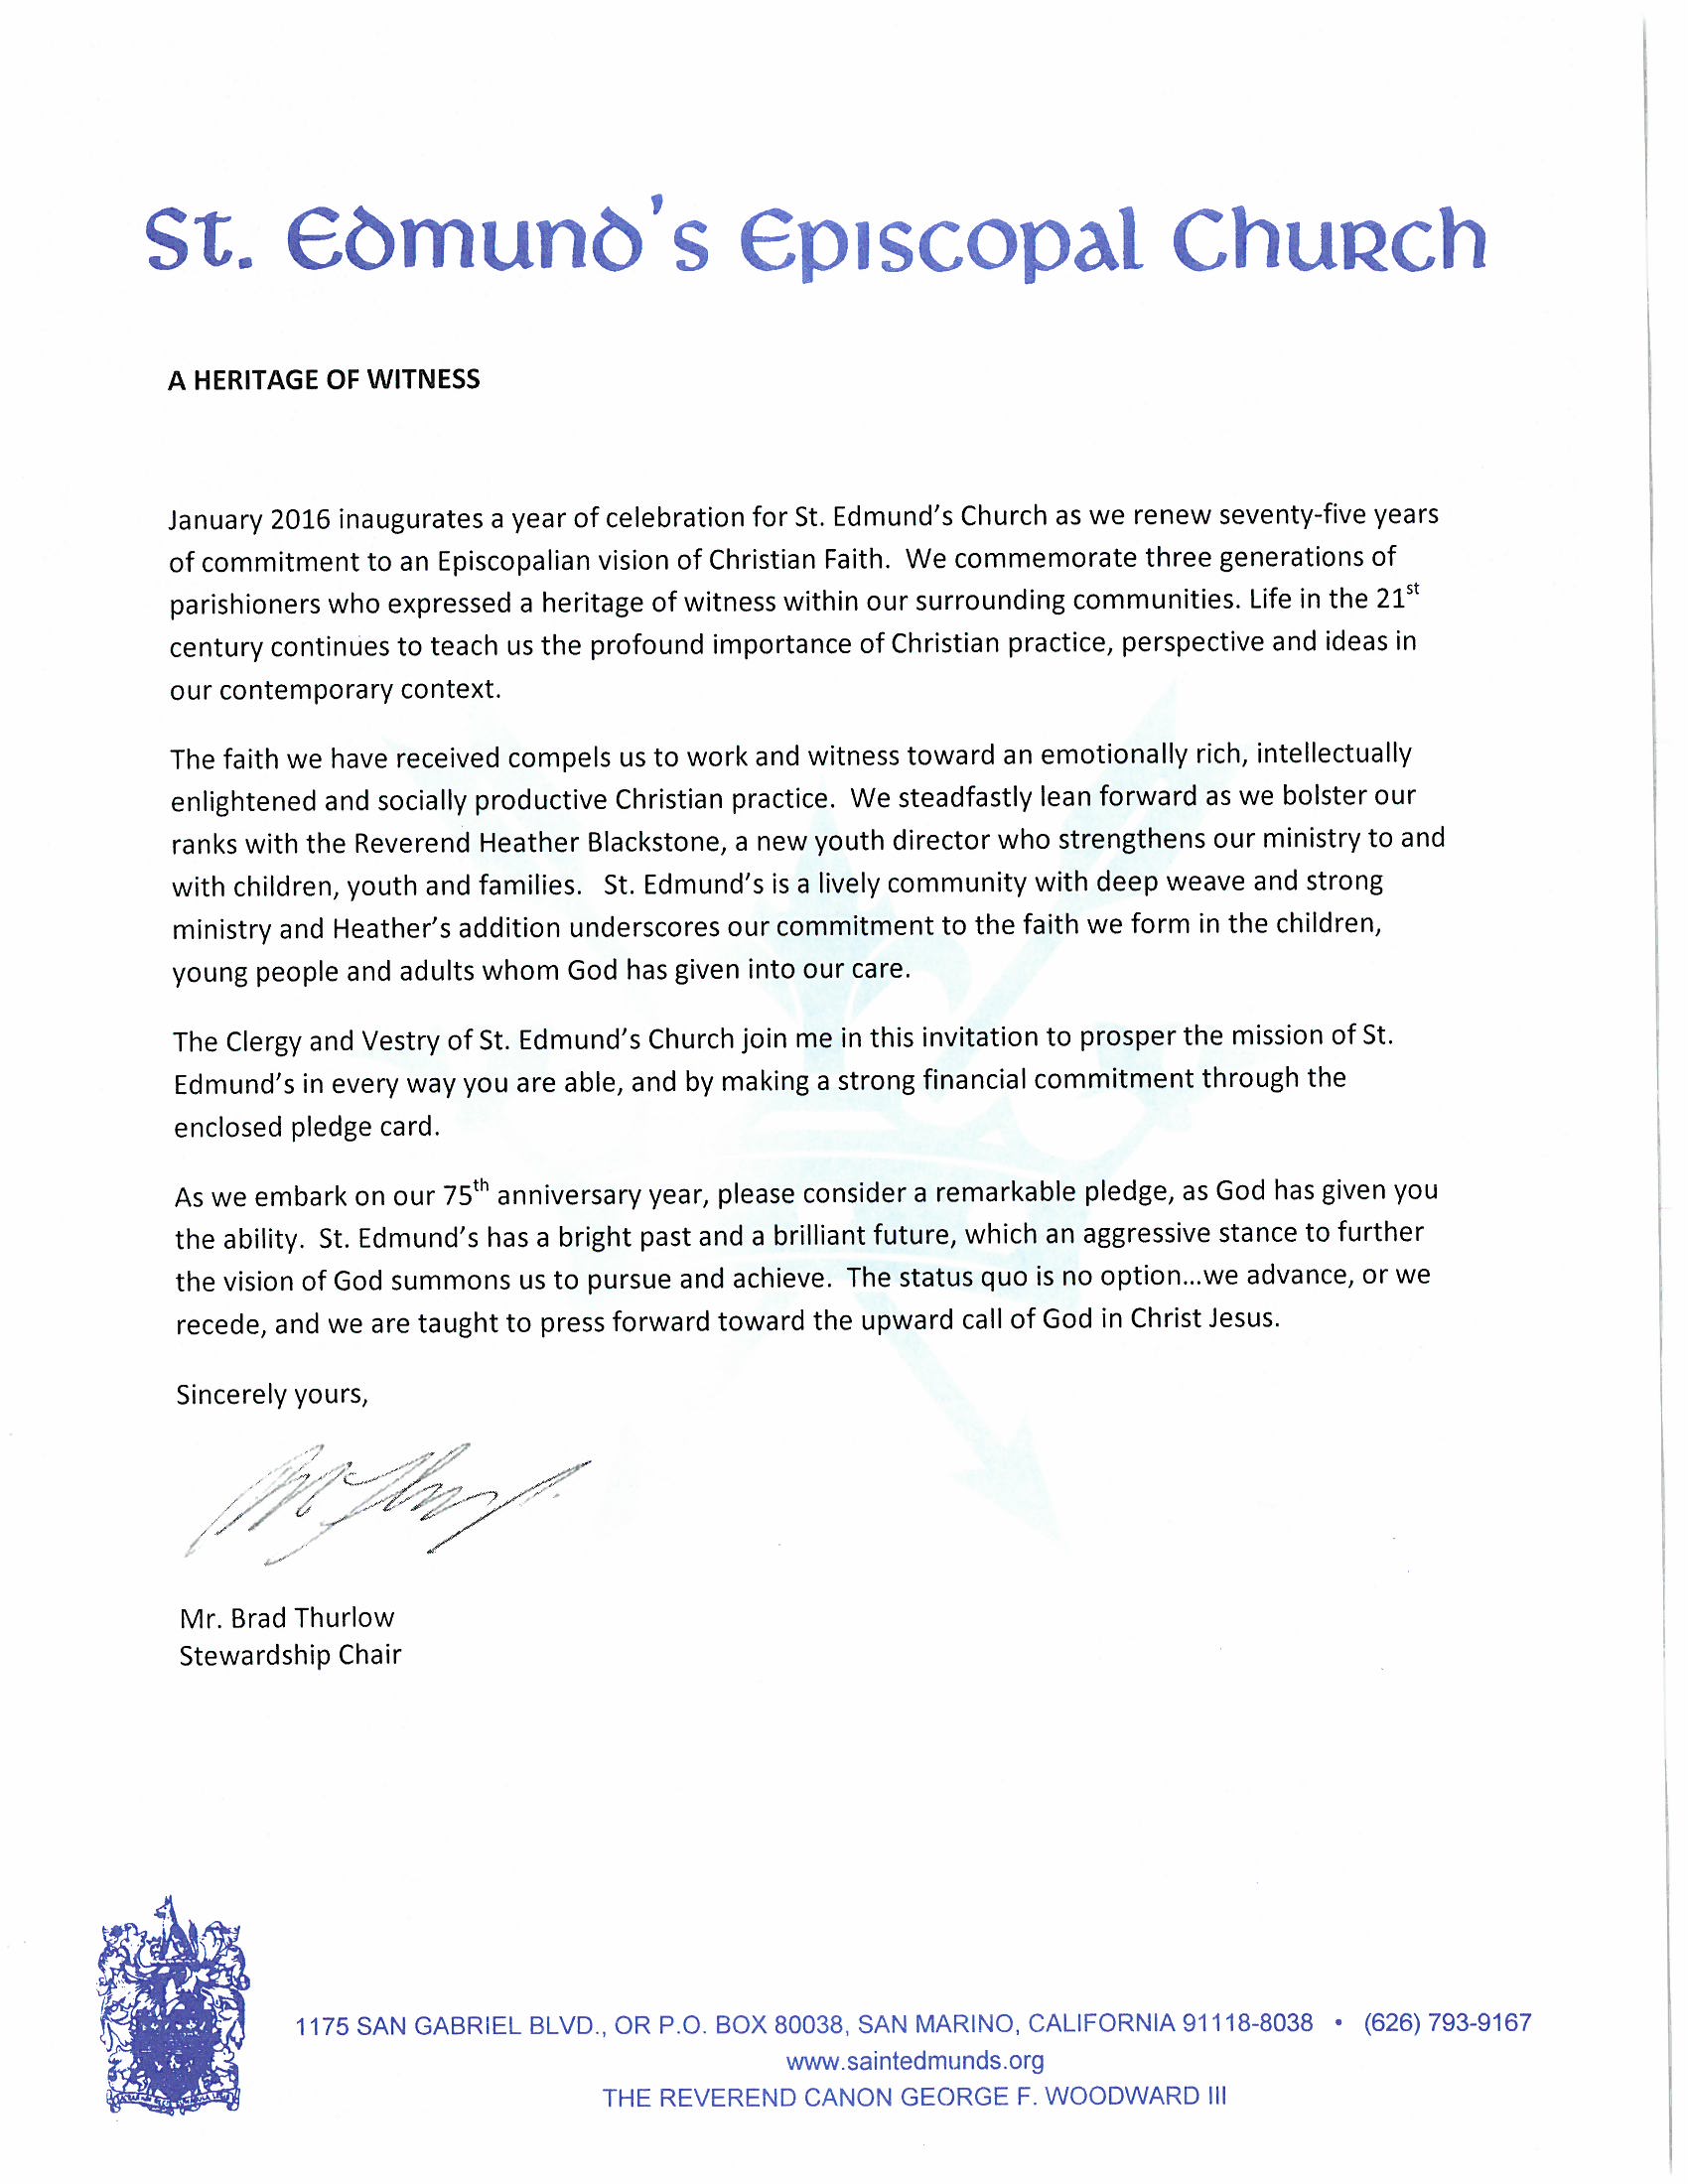 Stewardship Letter - Saint Edmunds